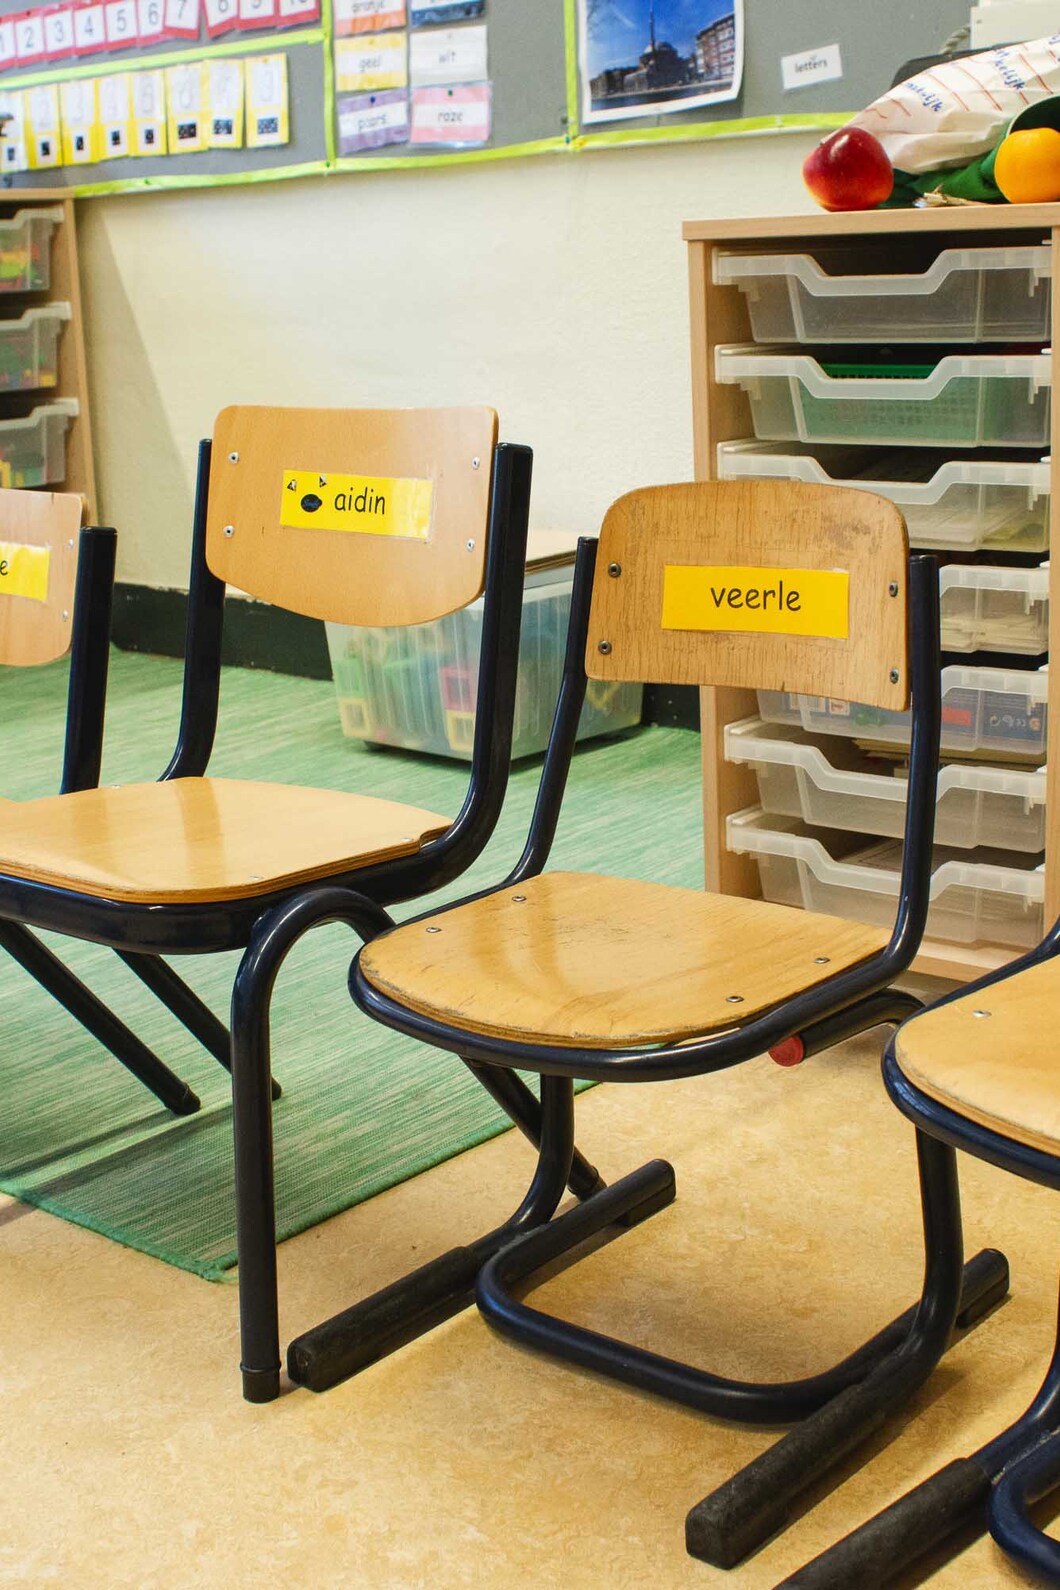 Een rij stoelen voor leerlingen met hun namen erop